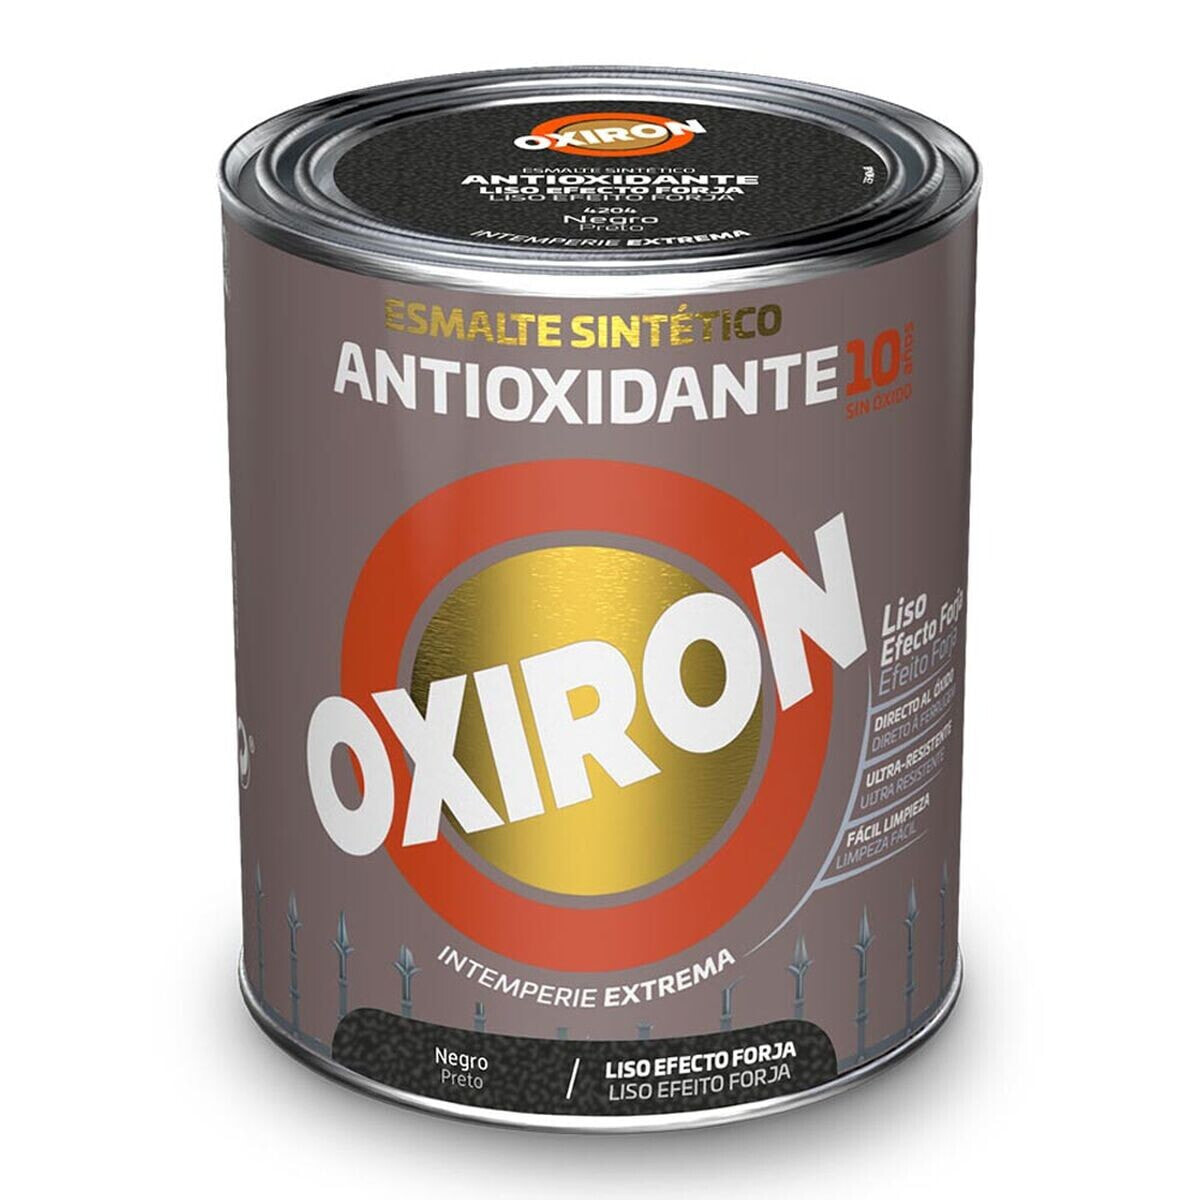 Синтетическая эмаль Oxiron Titan 5809096 250 ml Чёрный антиоксидантами